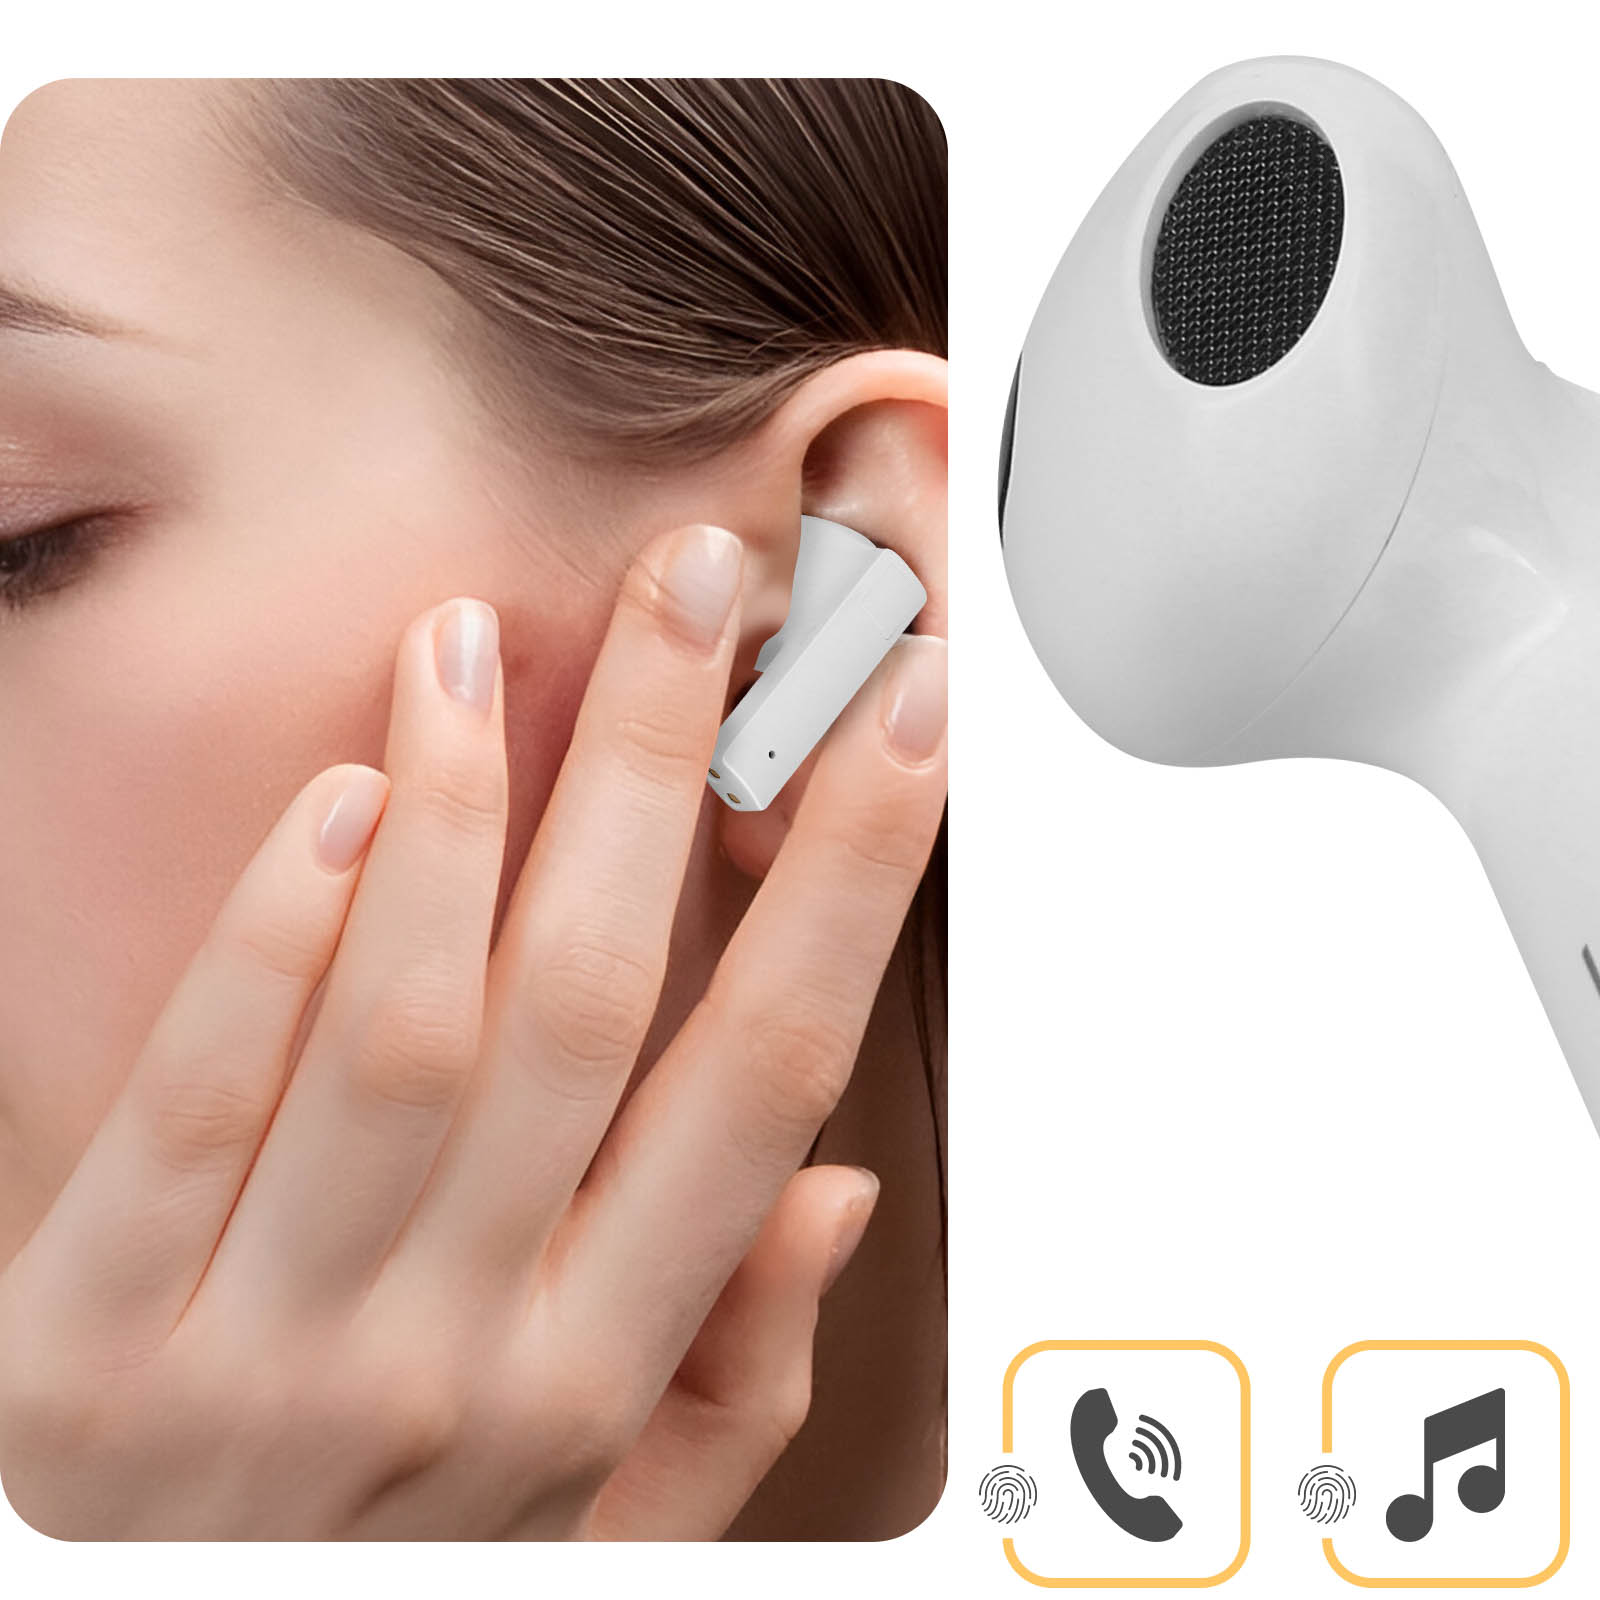 LINQ Q8, Bärchenmuster Bluetooth Kopfhörer